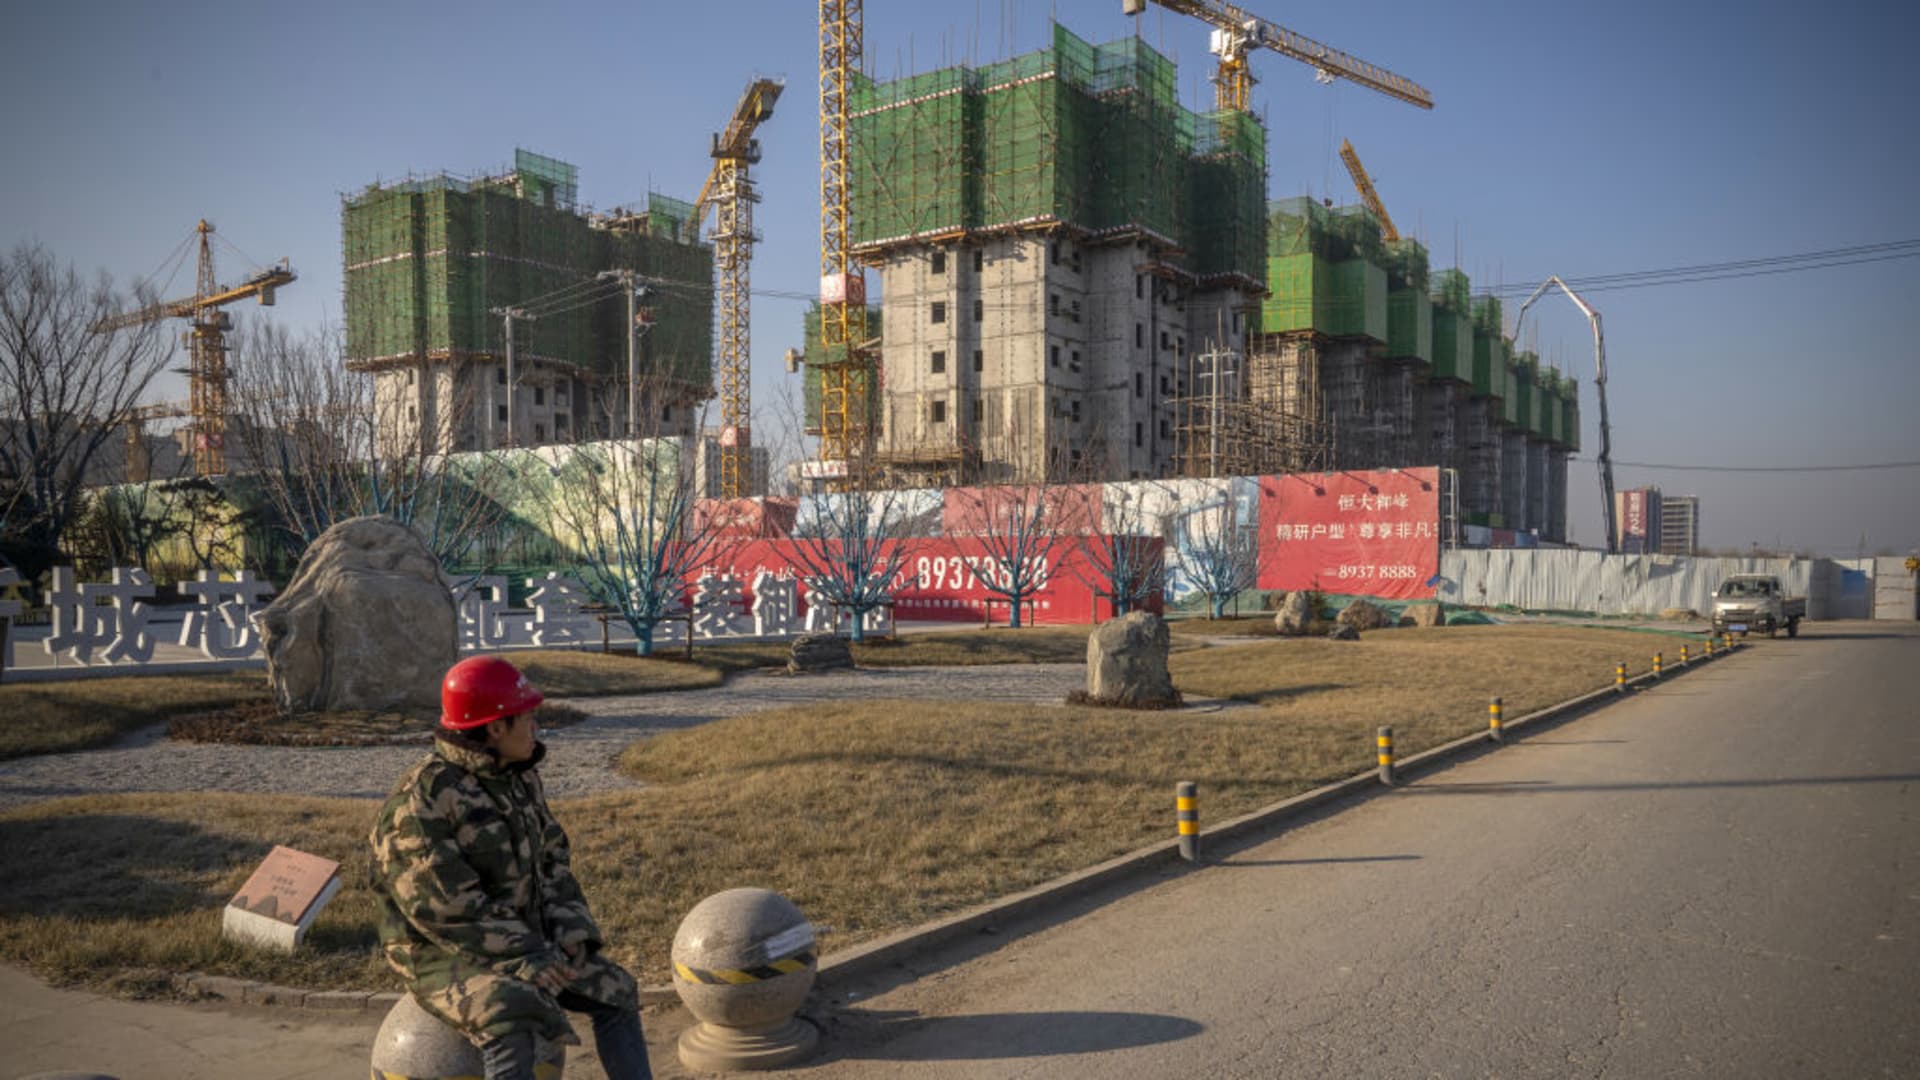 Chińska gospodarka może ulec pogorszeniu z powodu utraty zaufania do sektora nieruchomości